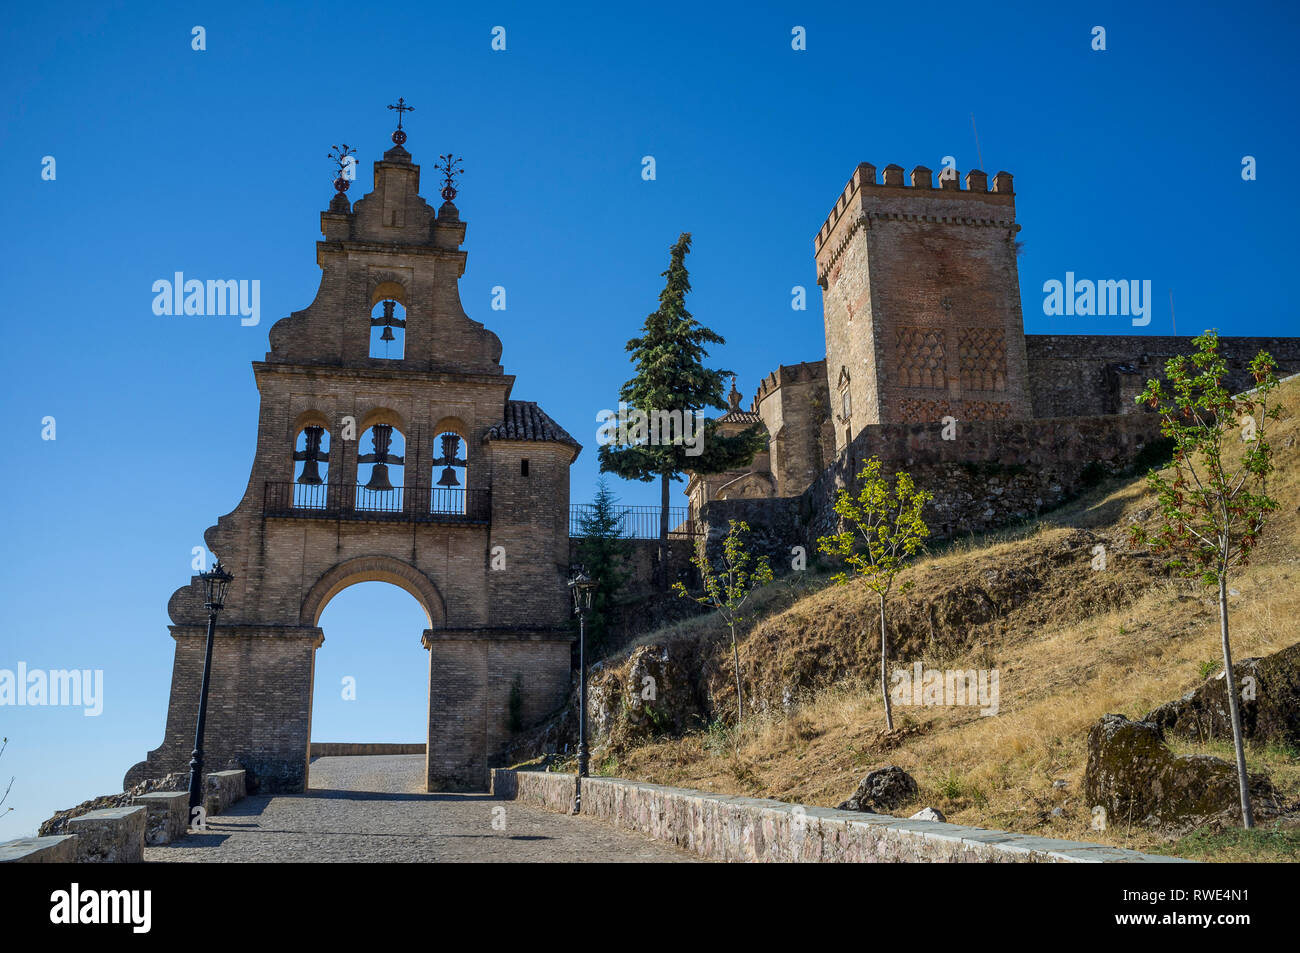 La passerelle / entrée spectaculaire clocher d'Aracena, Château Aracena, Huelva, Espagne. Banque D'Images